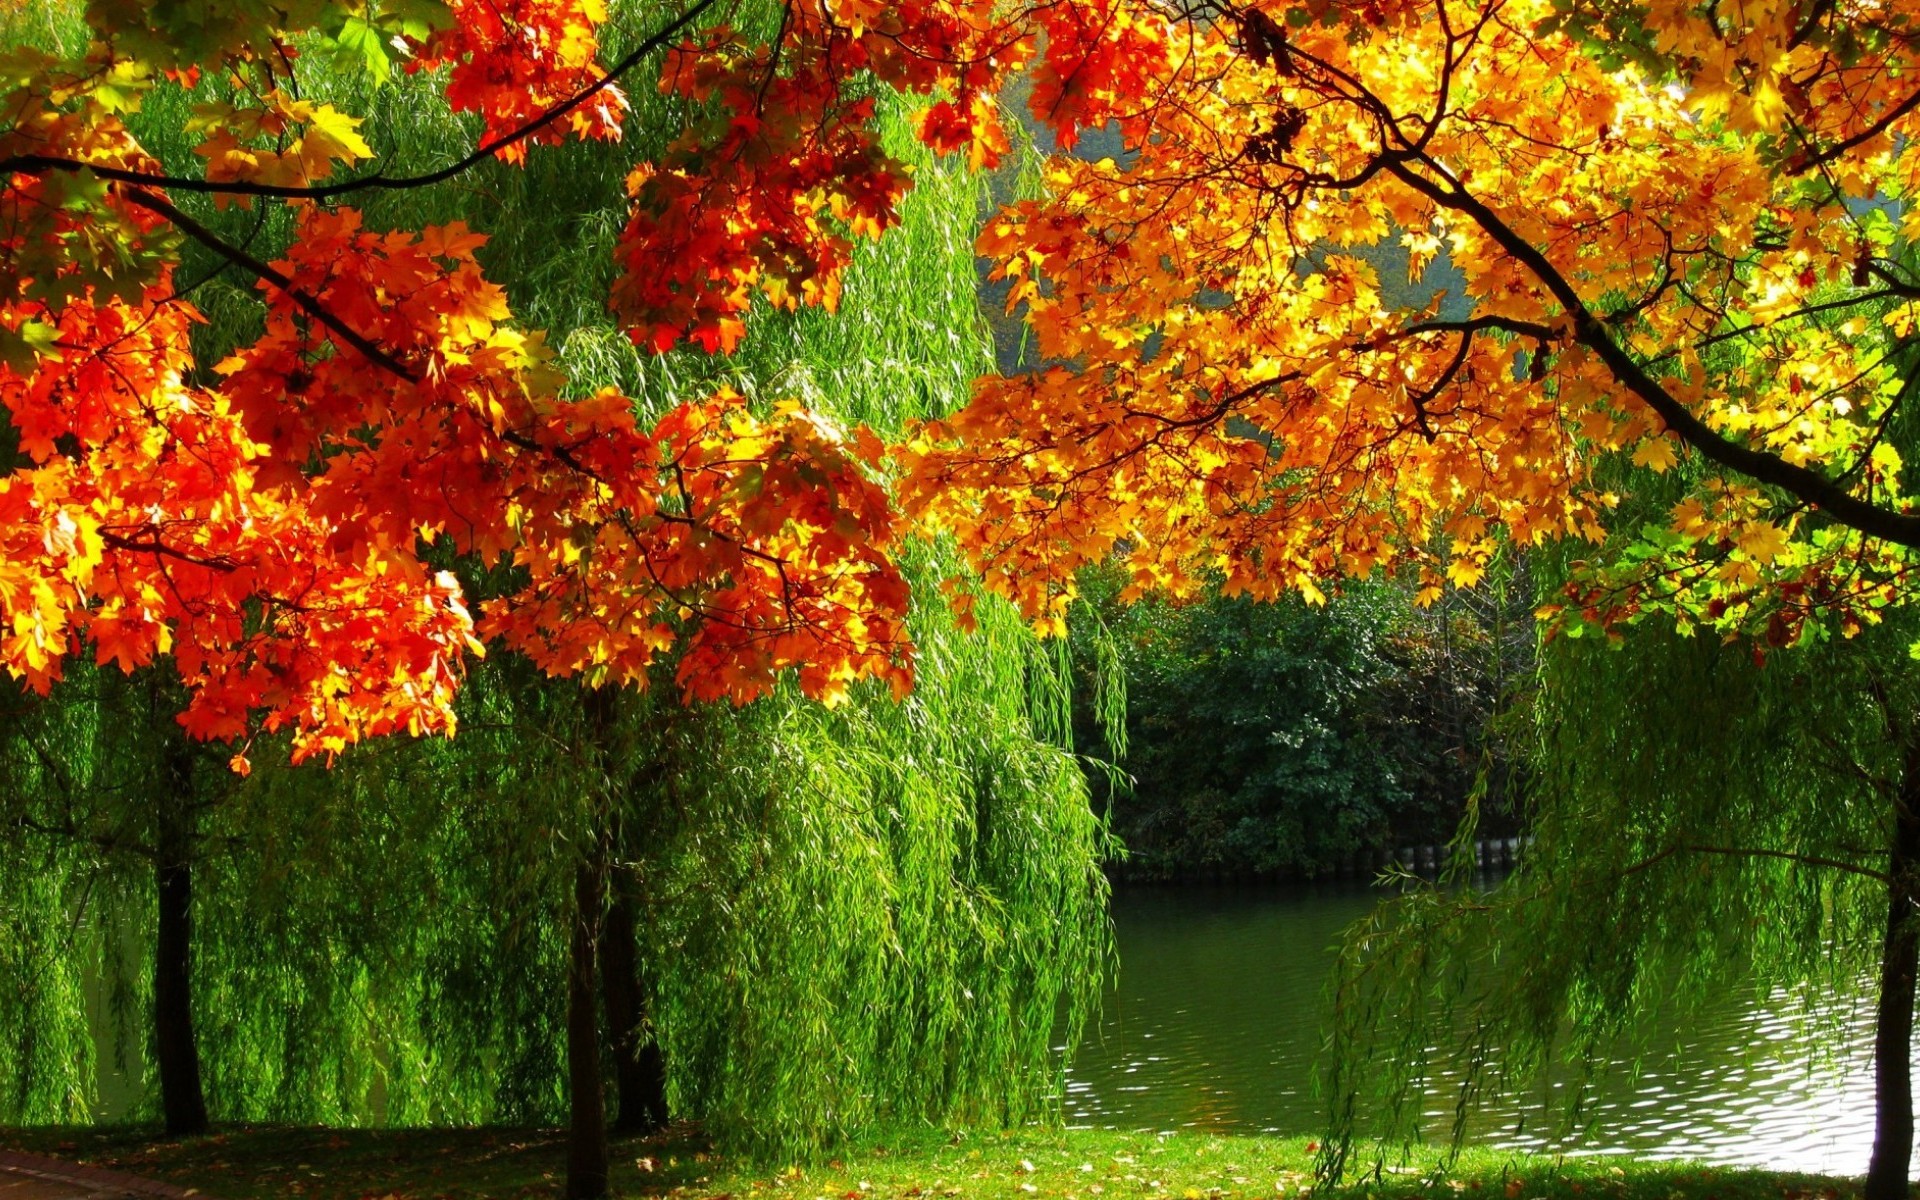 Скачать обои бесплатно Река, Осень, Дерево, Земля/природа картинка на рабочий стол ПК